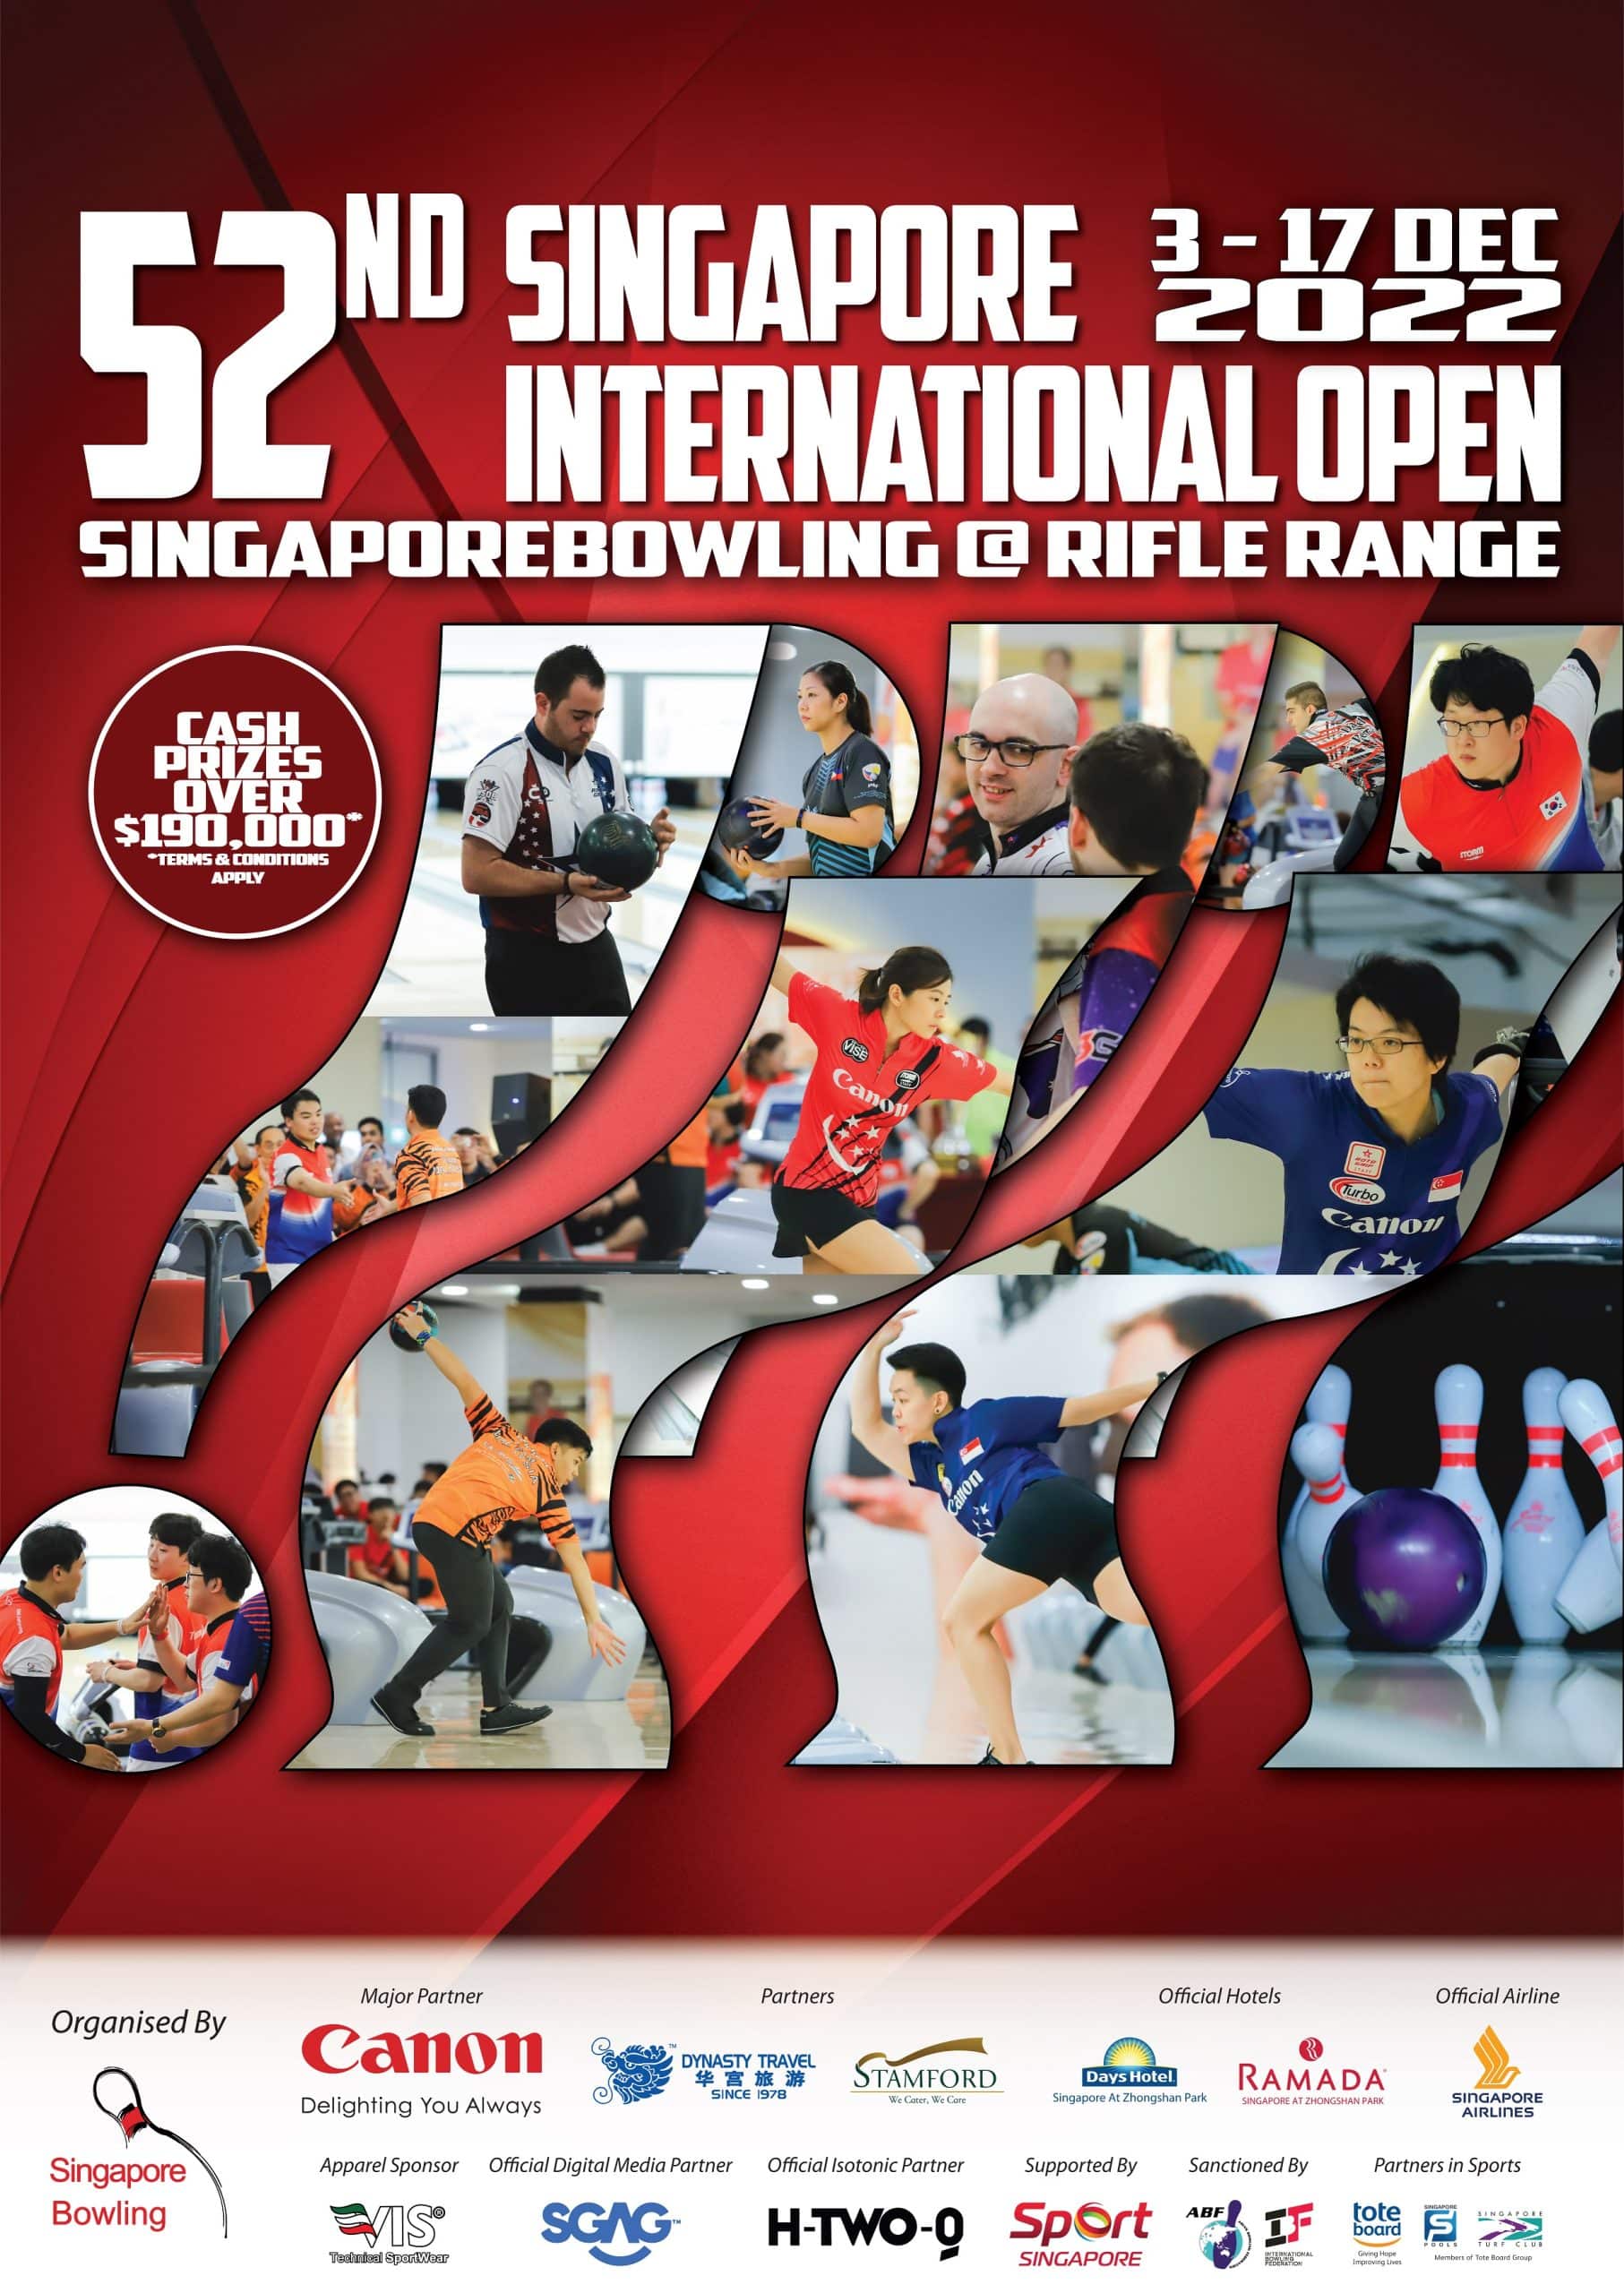 52nd Singapore International Open 2022